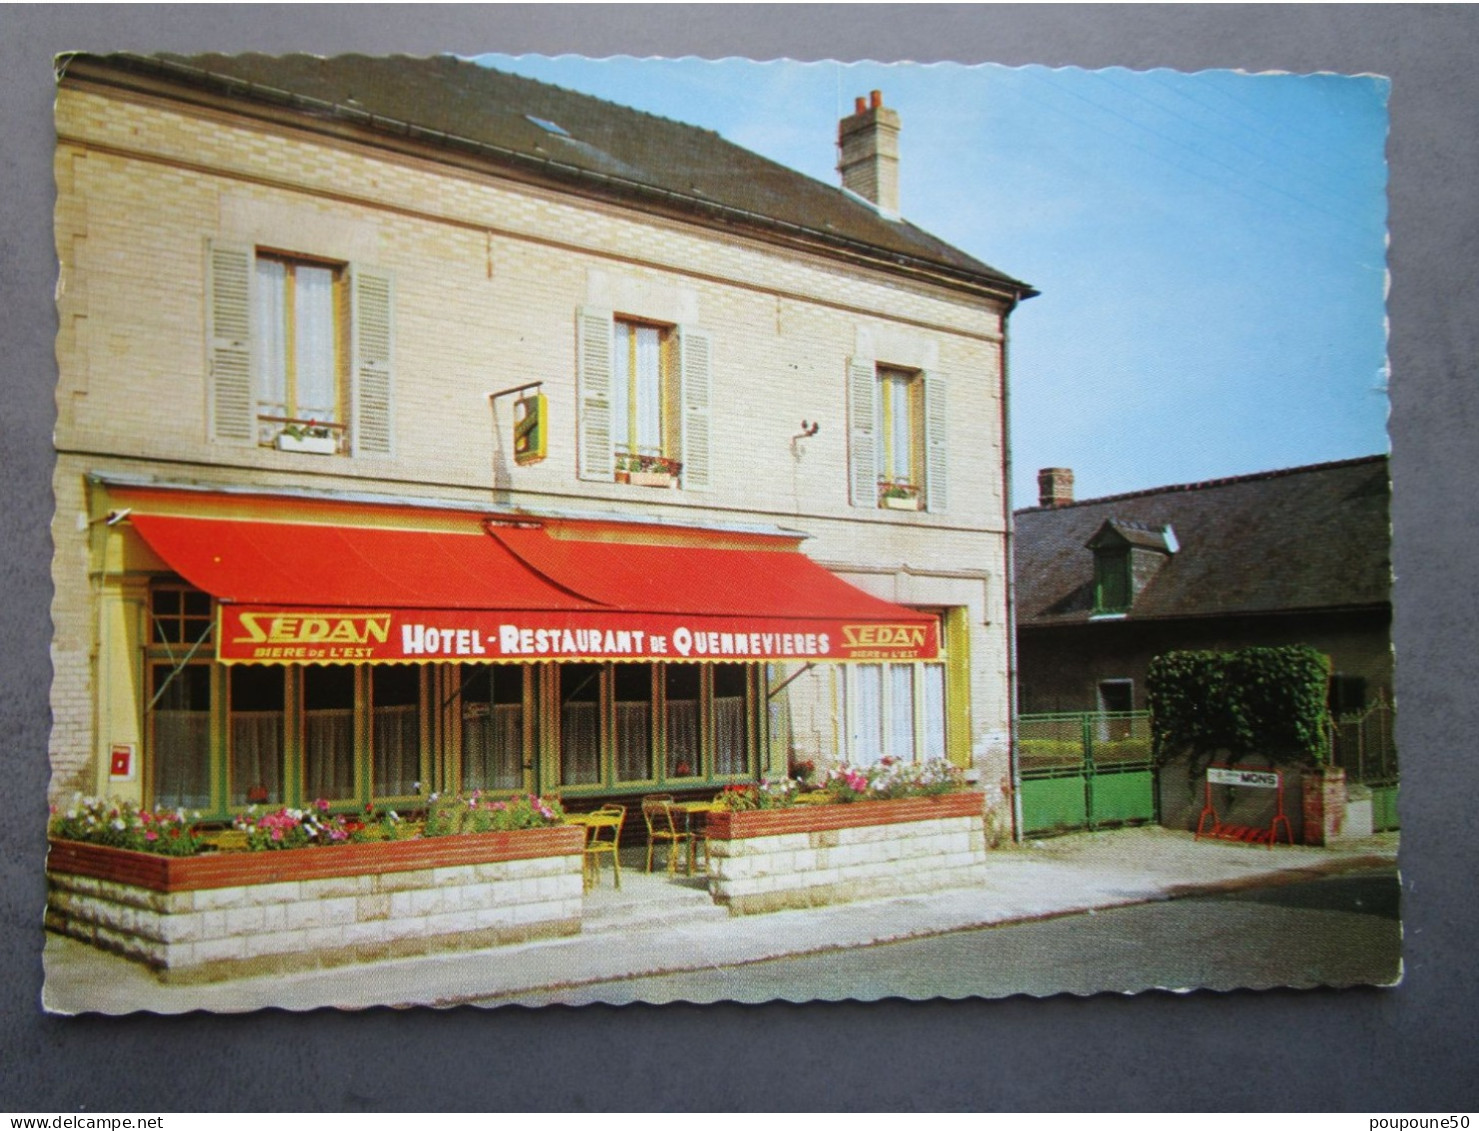 CP 60 Oise OLLENCOURT TRACY LE MONT Prés Ribecourt Dreslincourt - Hôtel Restaurant De Quennevieres Sedan Bière De L'est - Ribecourt Dreslincourt